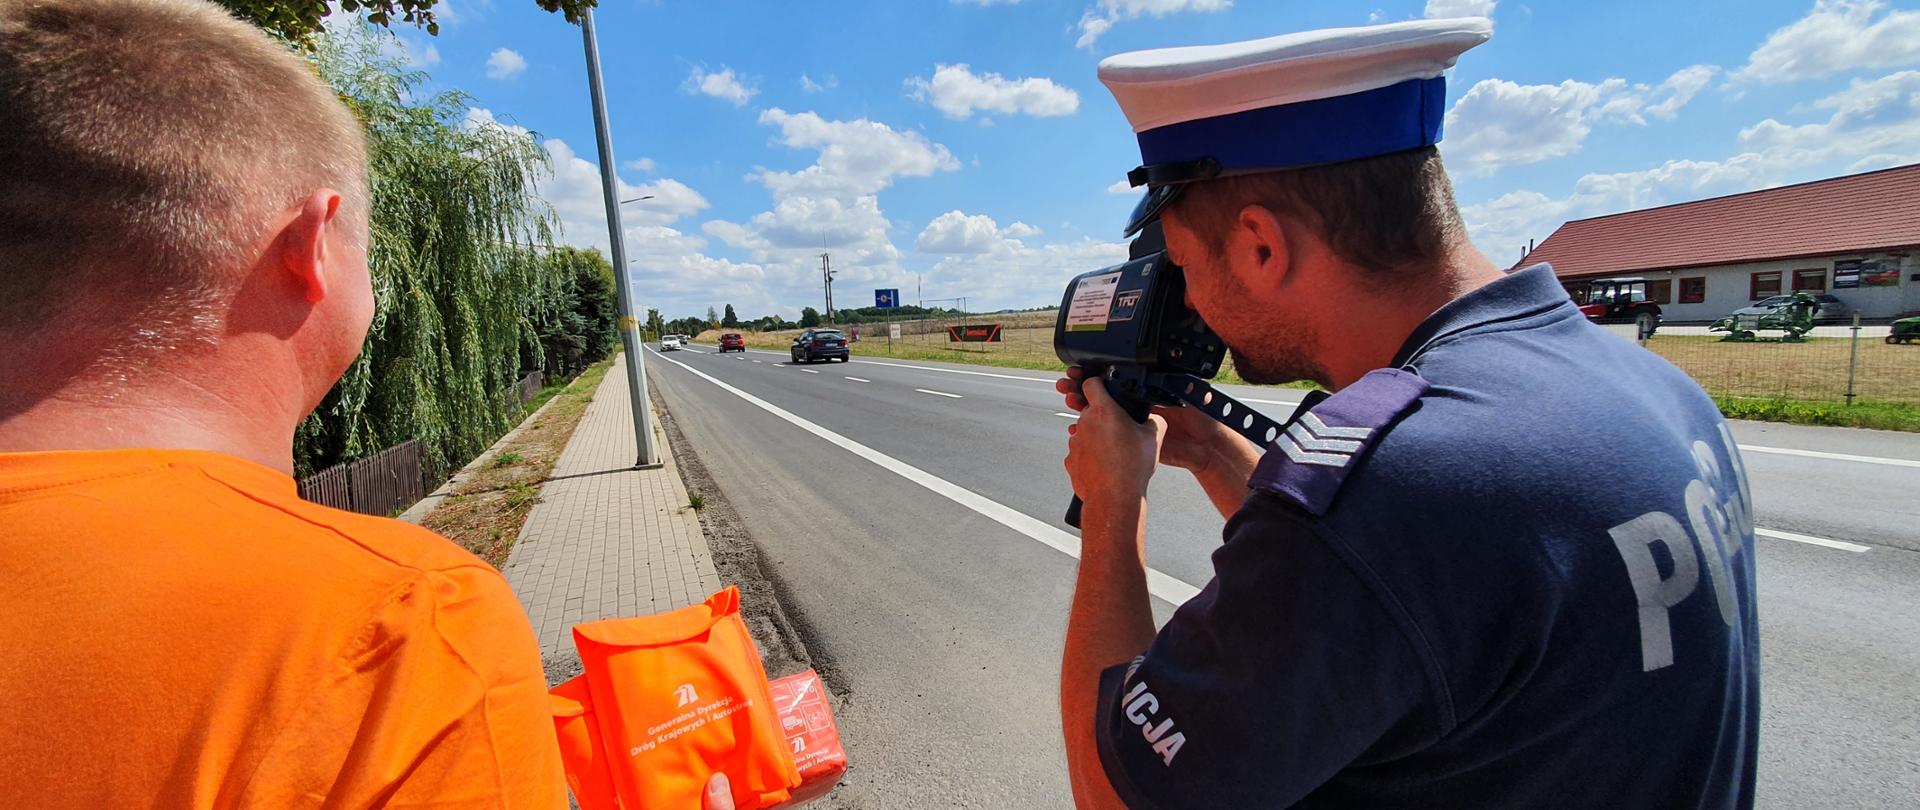 Na zdjęciu widać policjantów ze Zgorzelca oraz pracowników GDDKiA podczas akcji "Prędkość" na drodze krajowej nr 30